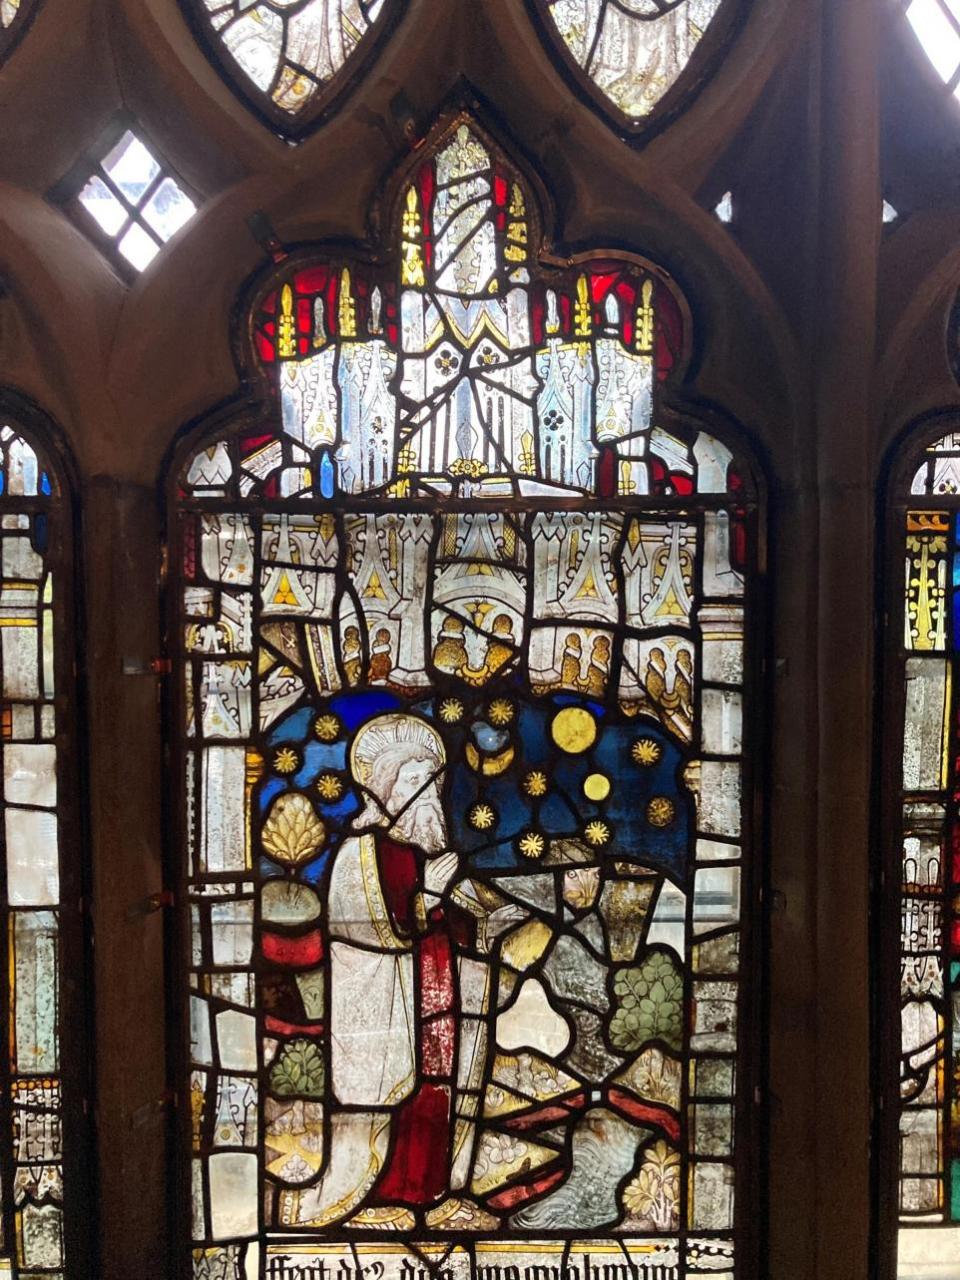 Worcester News: JEWEL-LIKE: Gott erschafft Himmel und Erde im Schöpfungsfenster in Malvern Priory, jetzt konserviert 